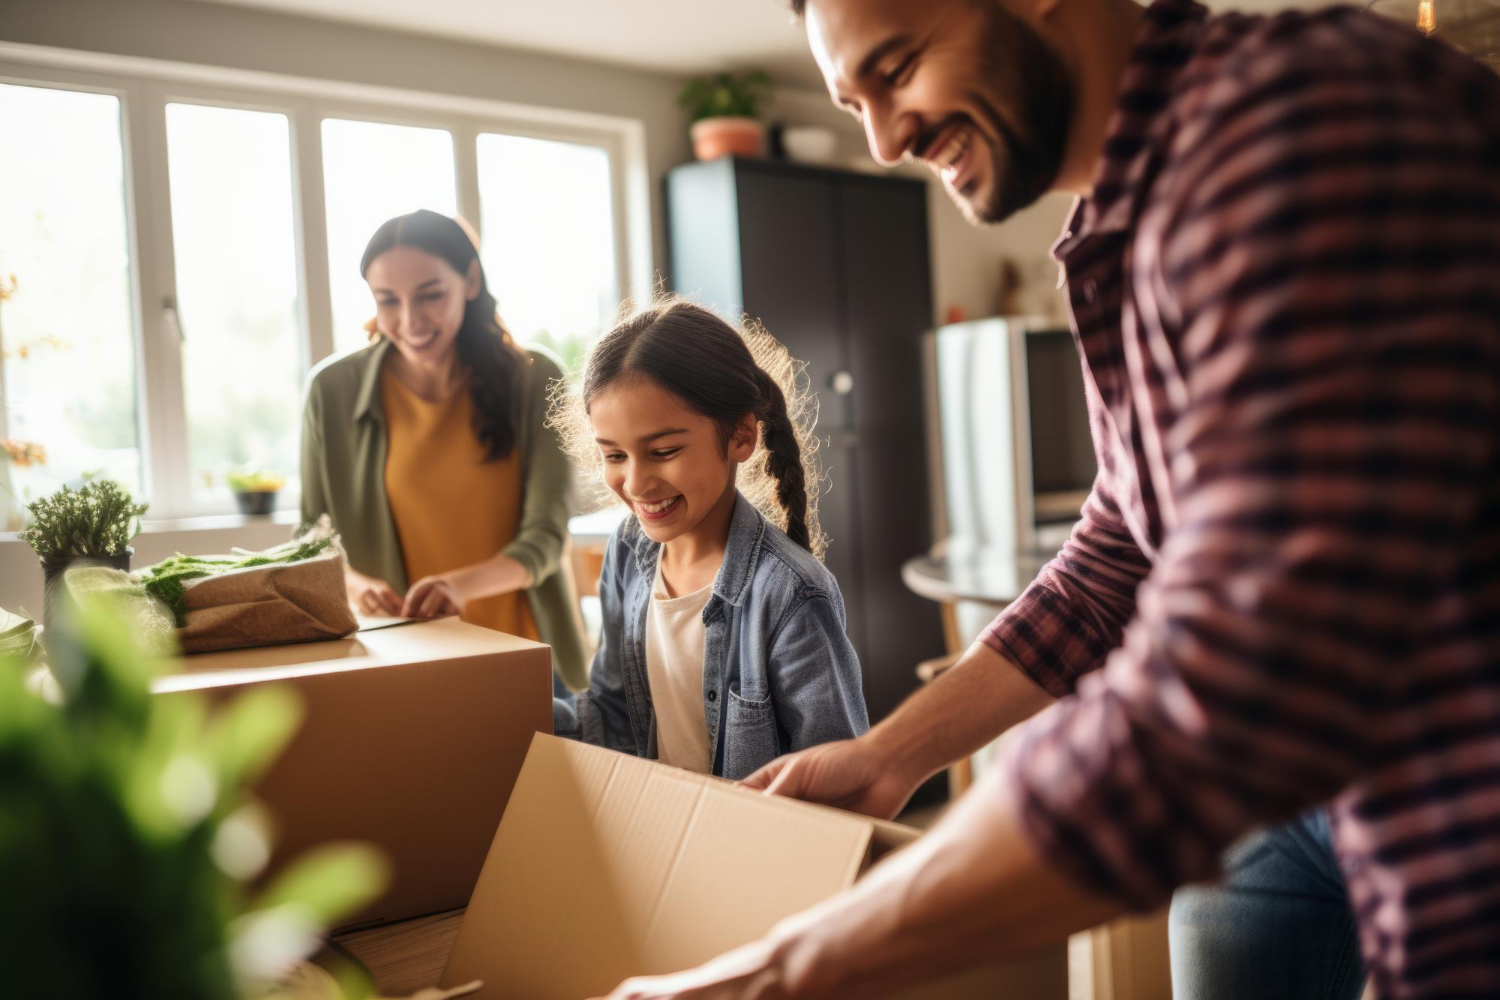 Famille souriante transportant des cartons pendant un déménagement, soulignant le concept de déménager avec facilité, même en situation de garde alternée.